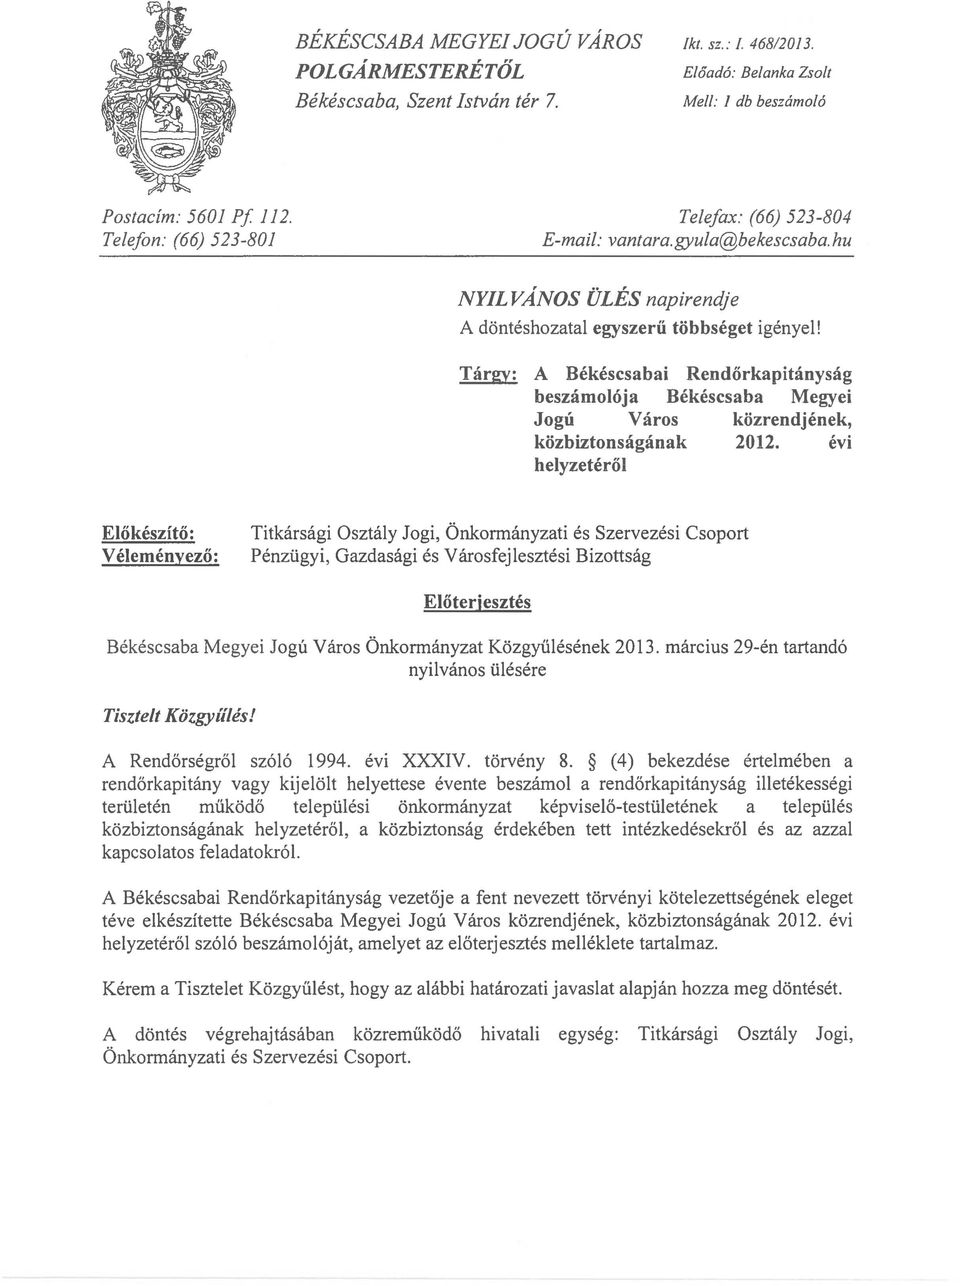 Tárgy: A Békéscsabai Rendőrkapitányság beszámolója Békéscsaba Megyei Jogú Város közrendjének, közbiztonságának 2012.